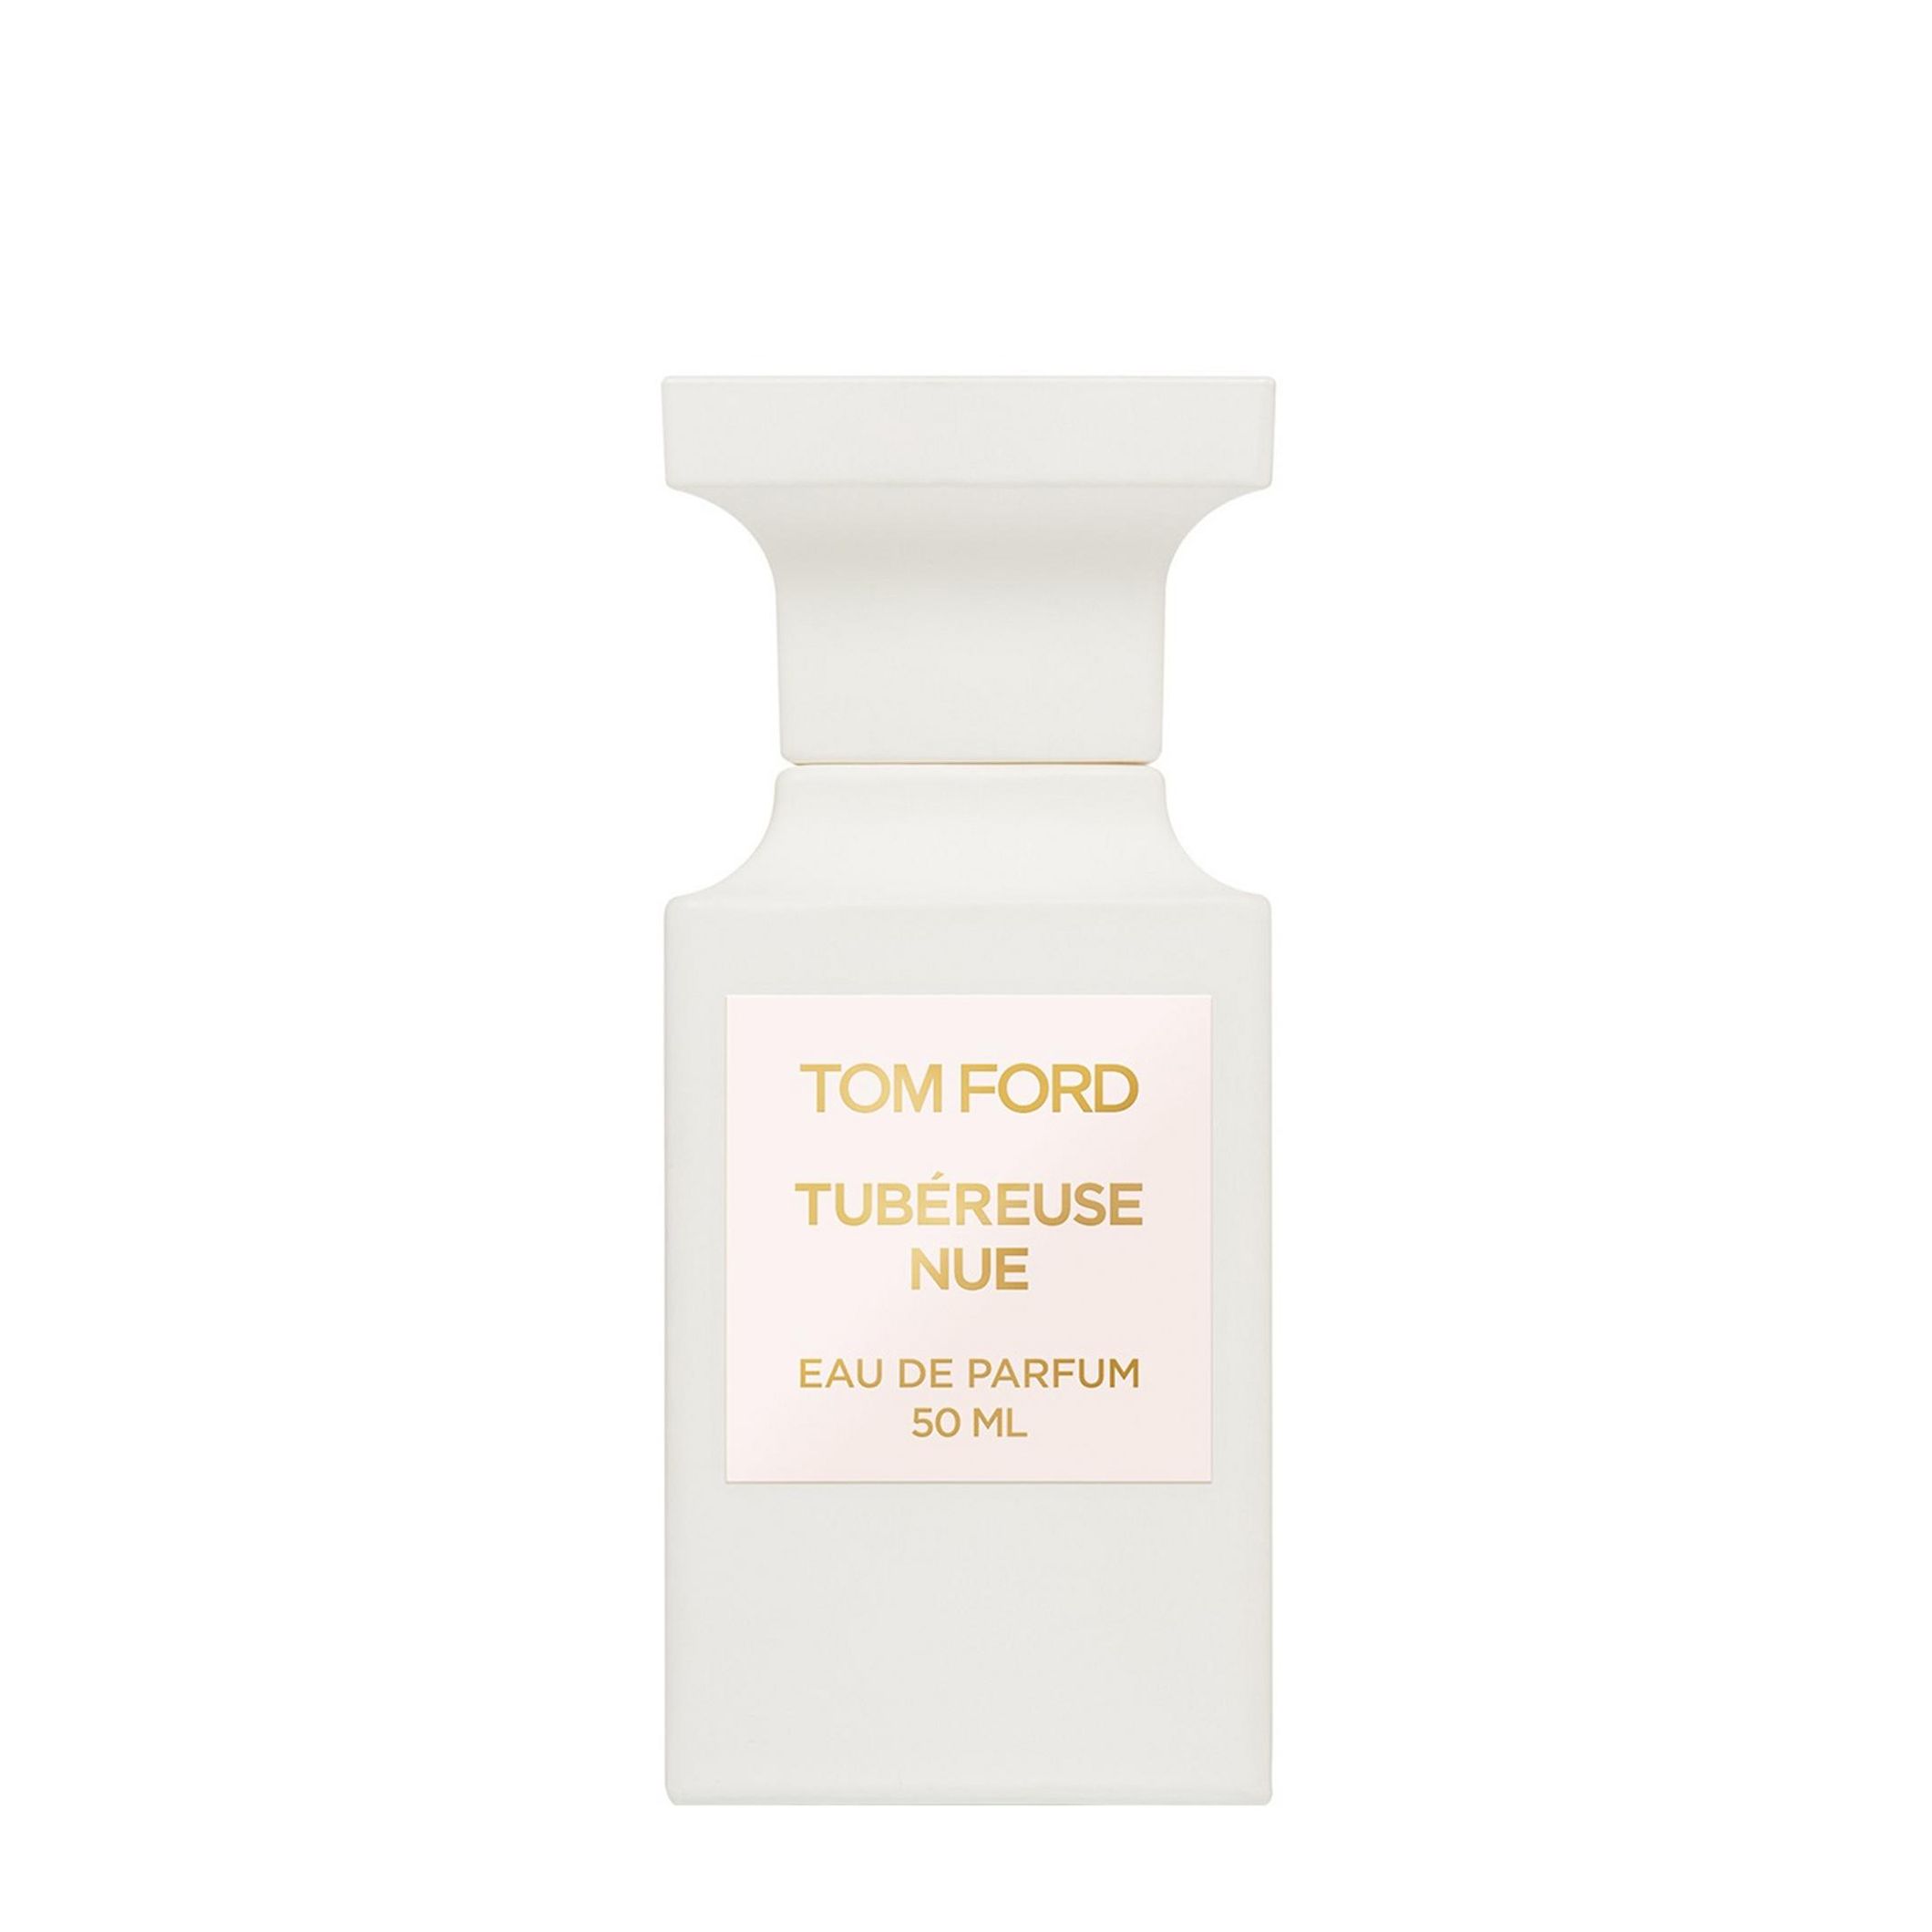 Вода парфюмерная Tom Ford Tubereuse Nue, унисекс, 50 мл